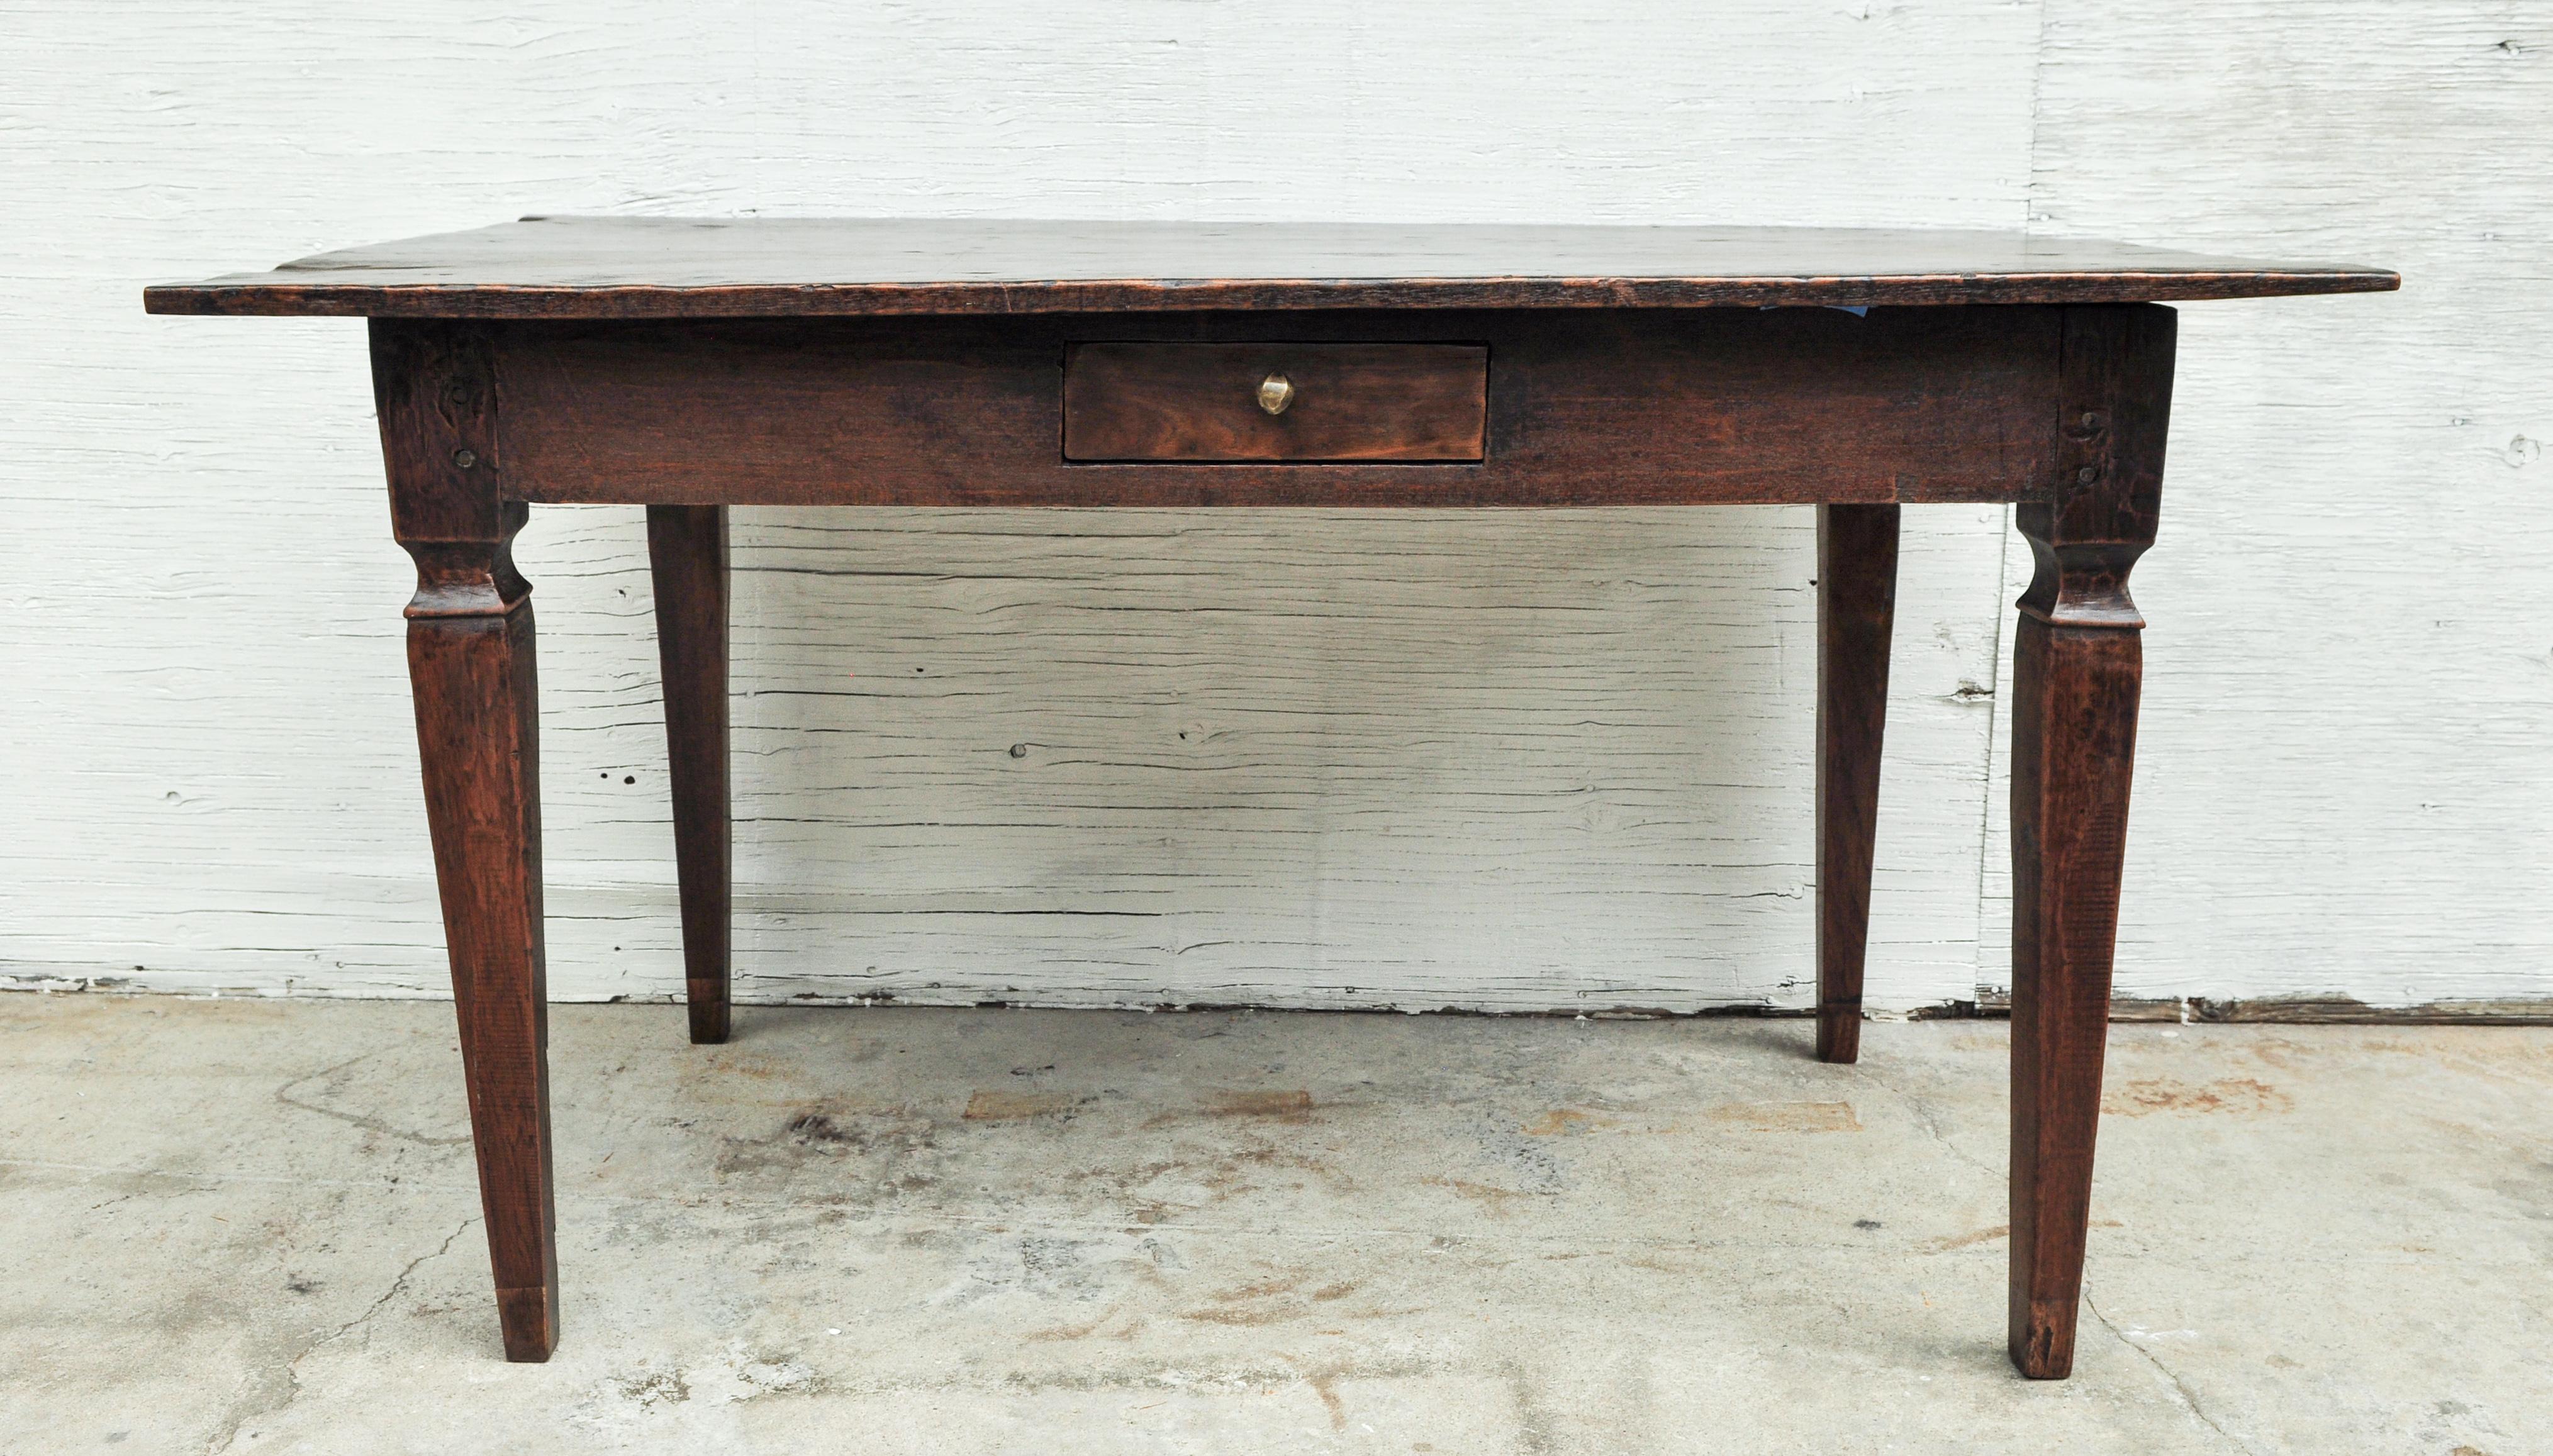 Vintage teak dining or kitchen table. Measure: 54